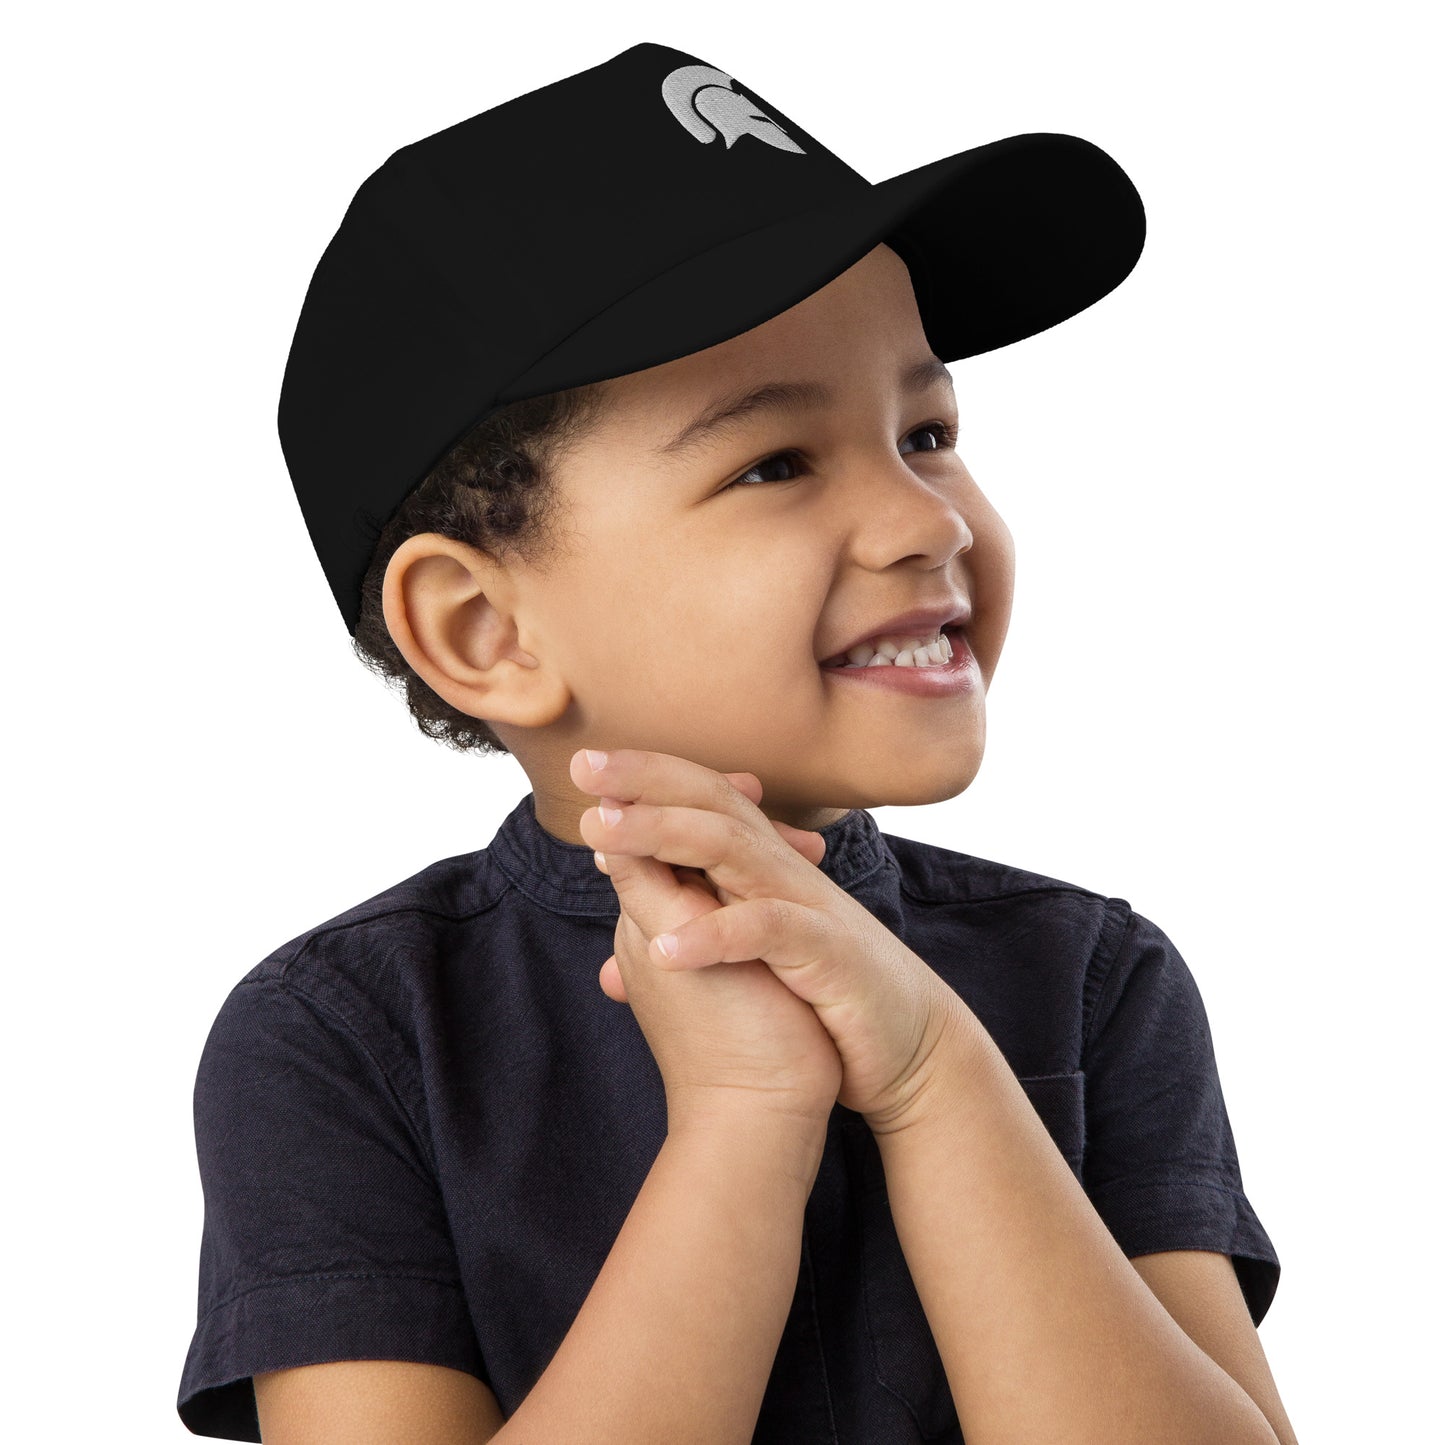 Skobel Kids Classic Baseball Cap (White Logo)